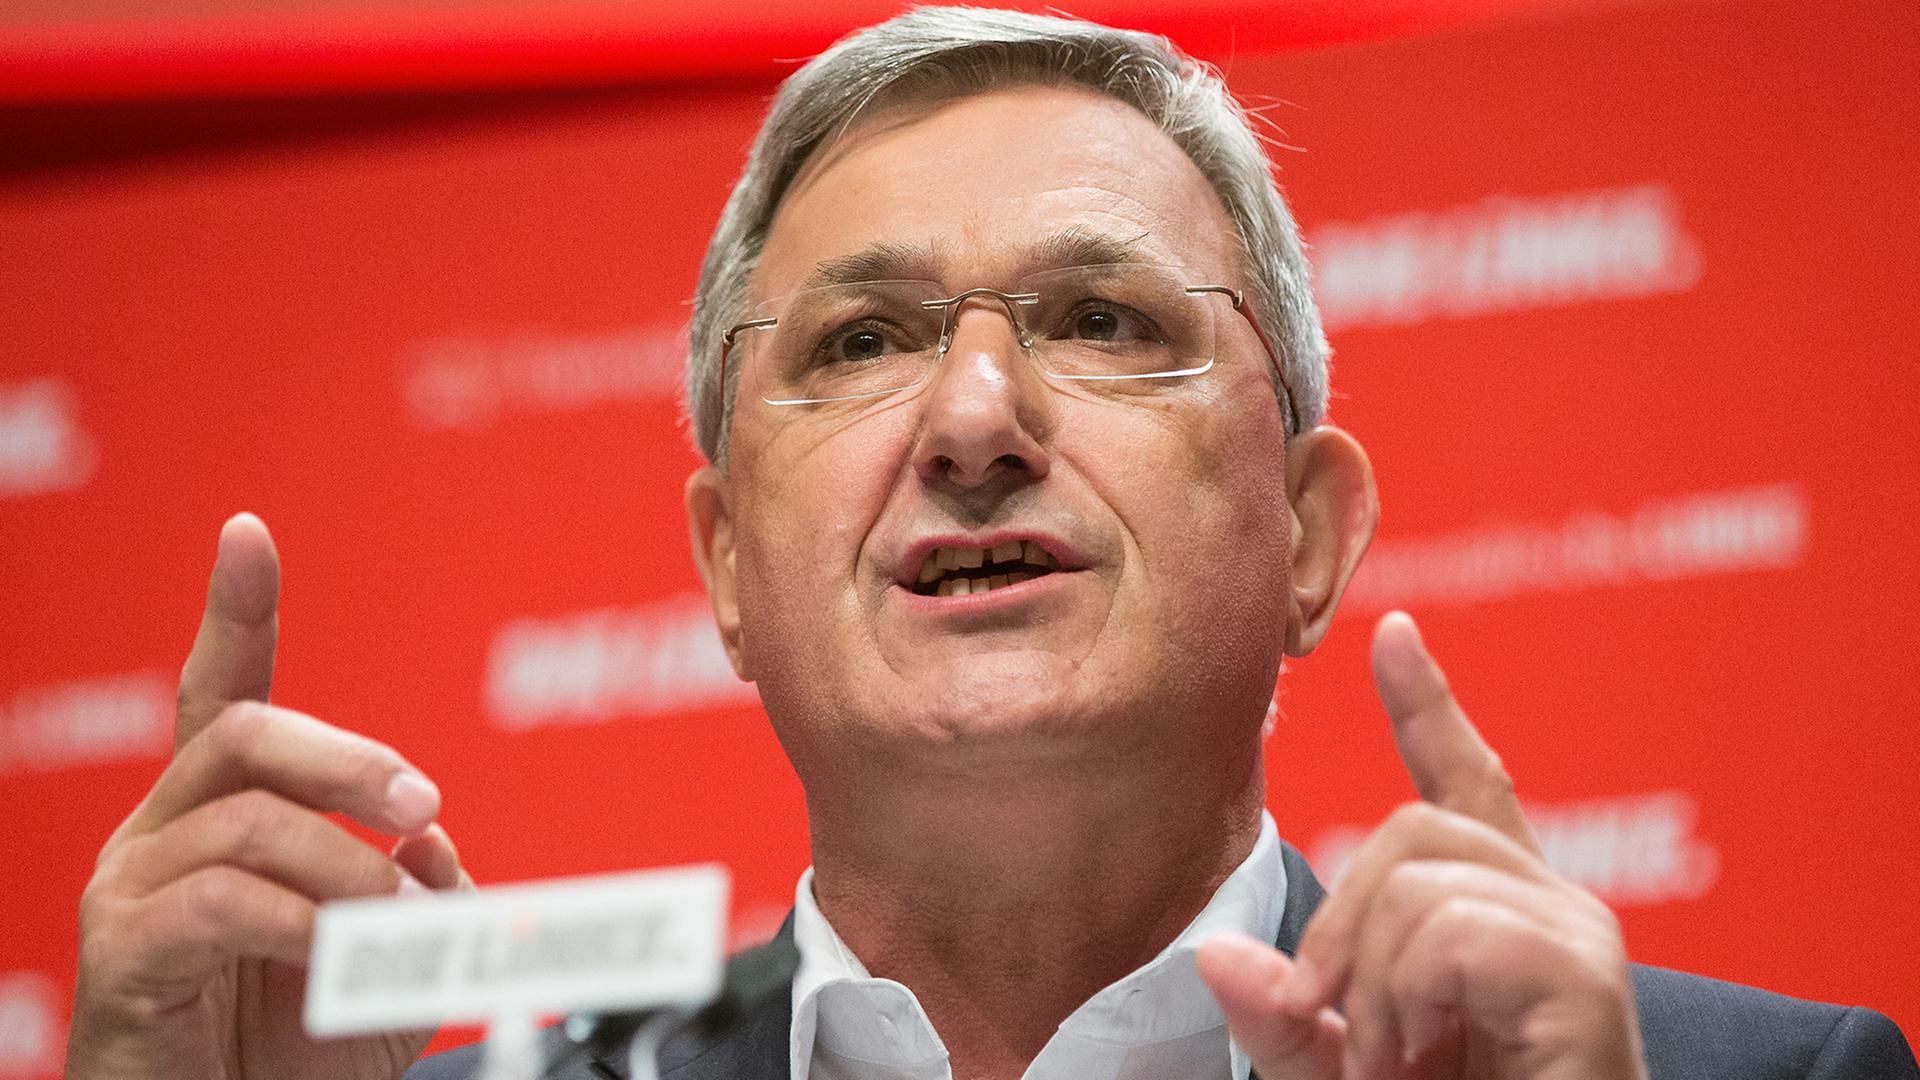 Der Vorsitzende der Partei Die Linke, Bernd Riexinger, steht vor dem Parteilogo am Rednerpult und hebt beide Zeigefinger.